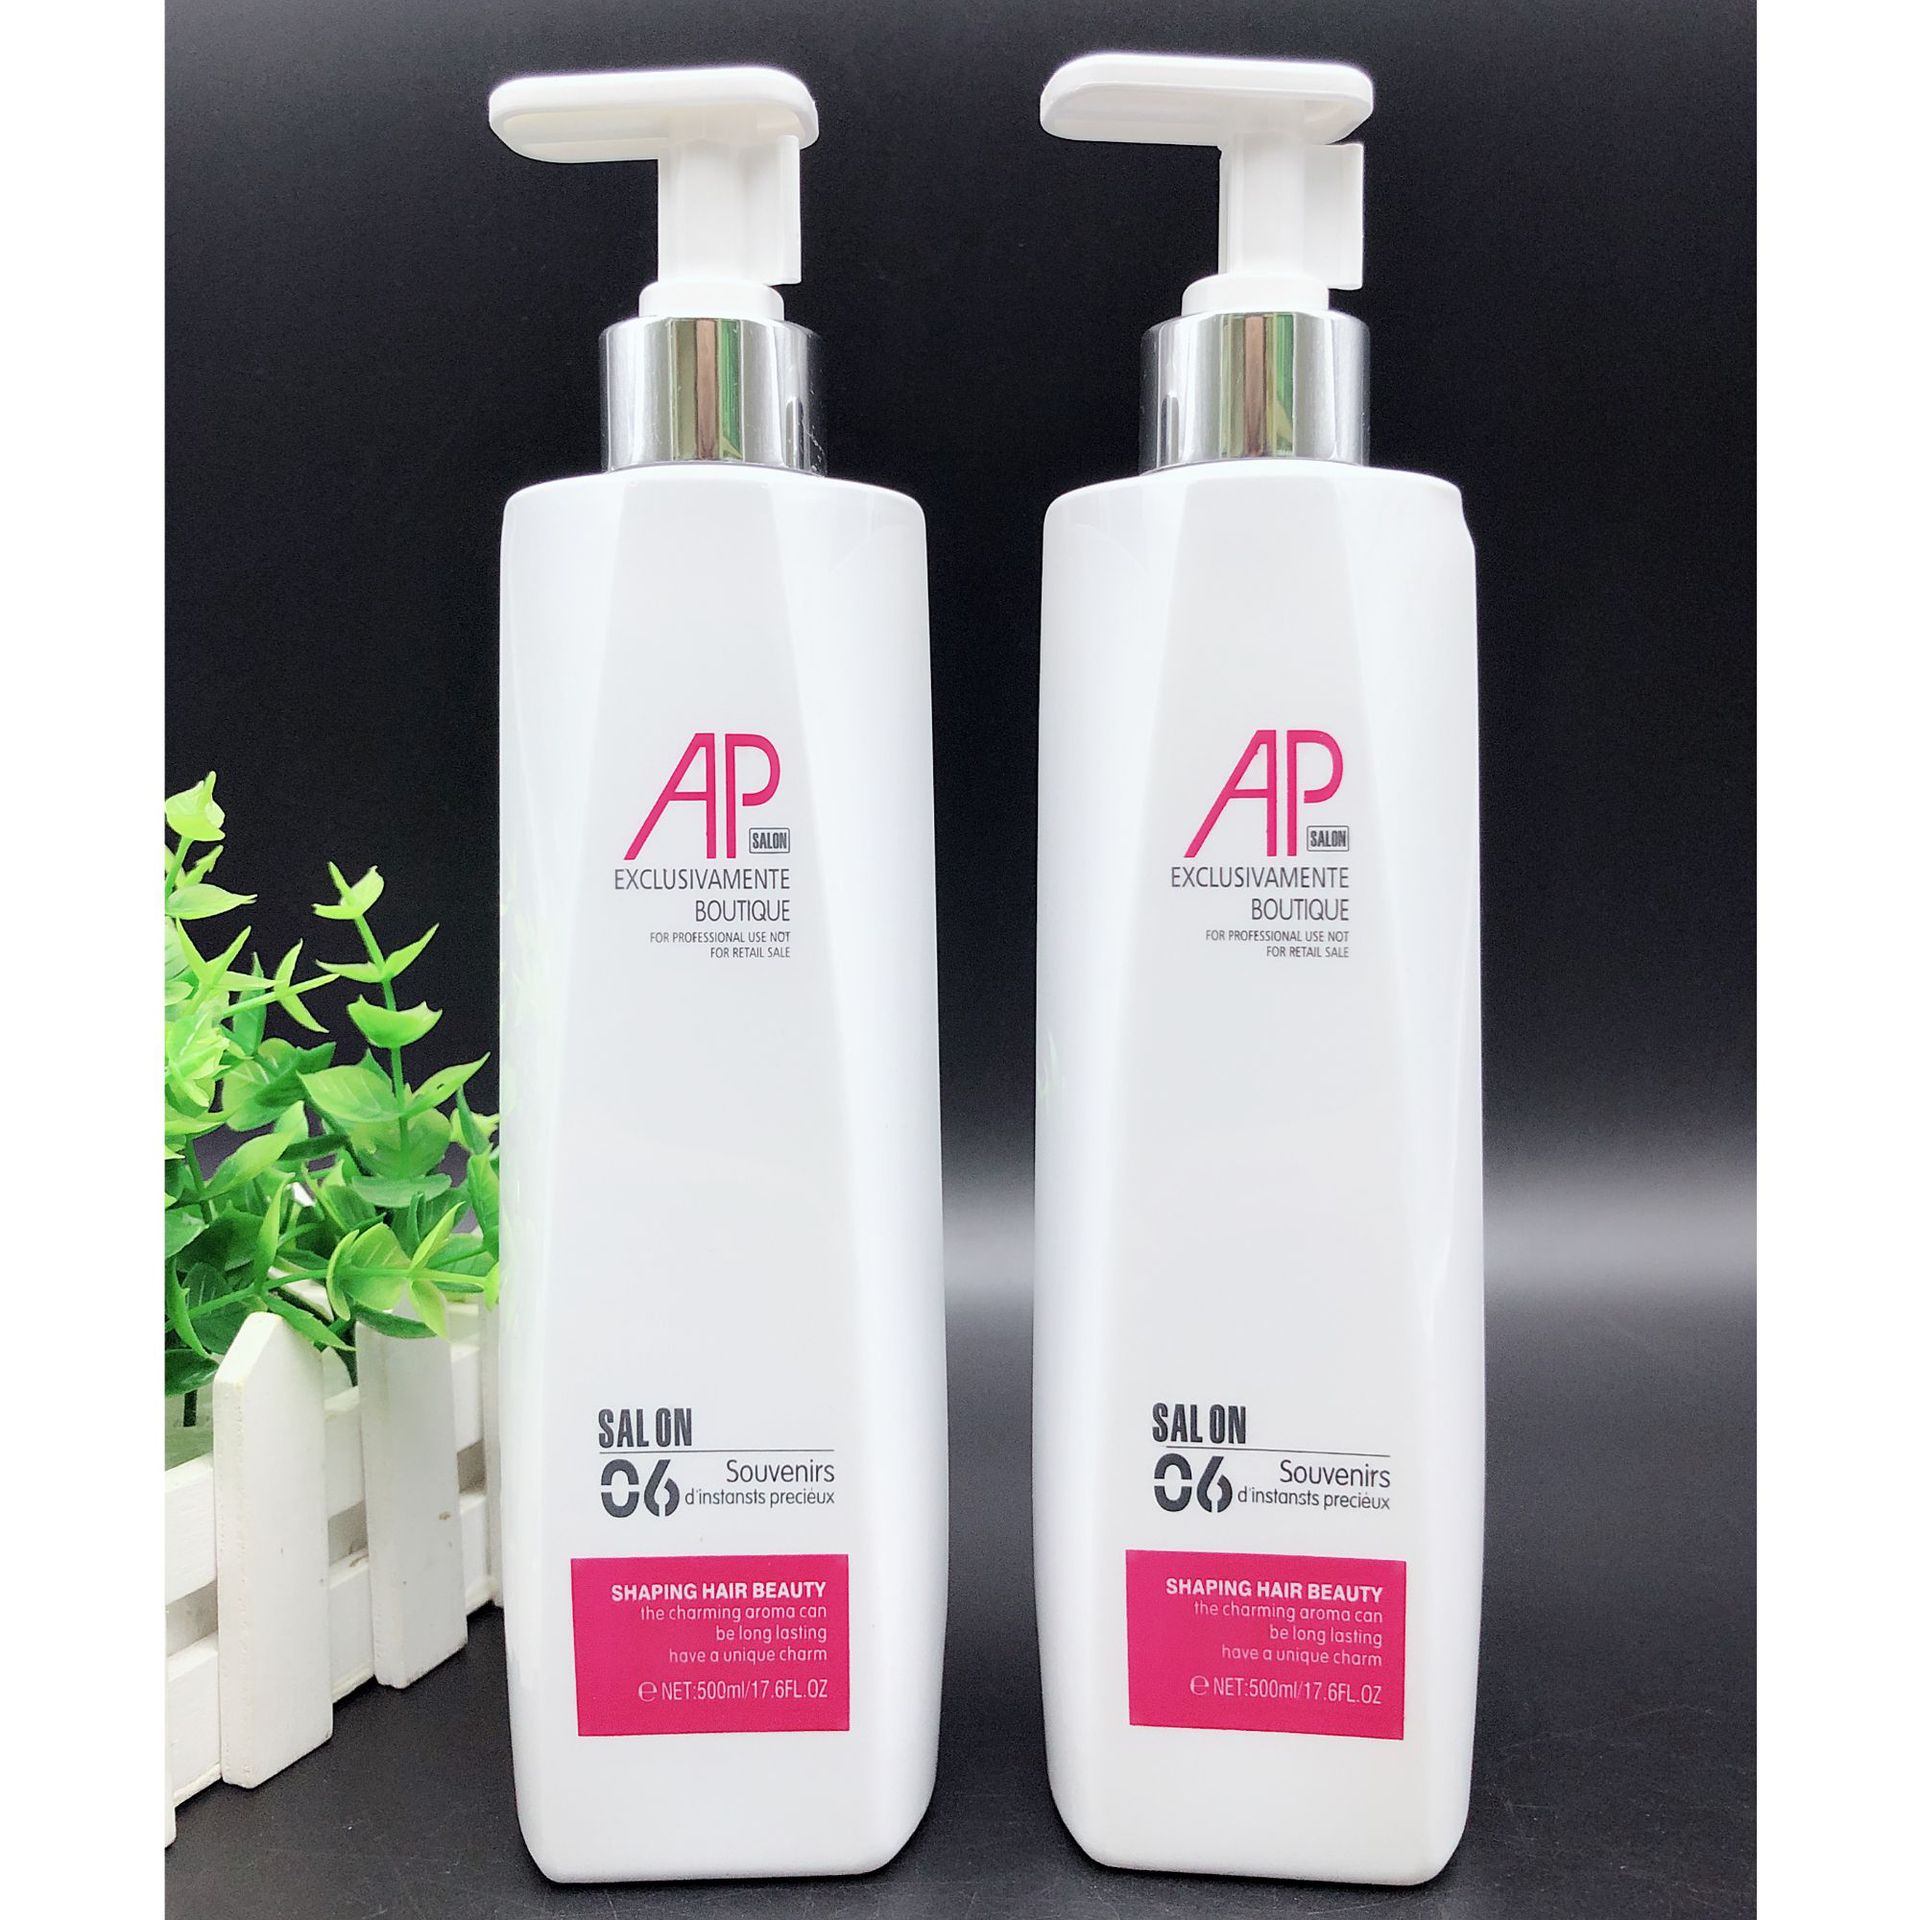 新款AP胶原蛋白修护霜烫染护理柔顺美发护理产品系列厂家